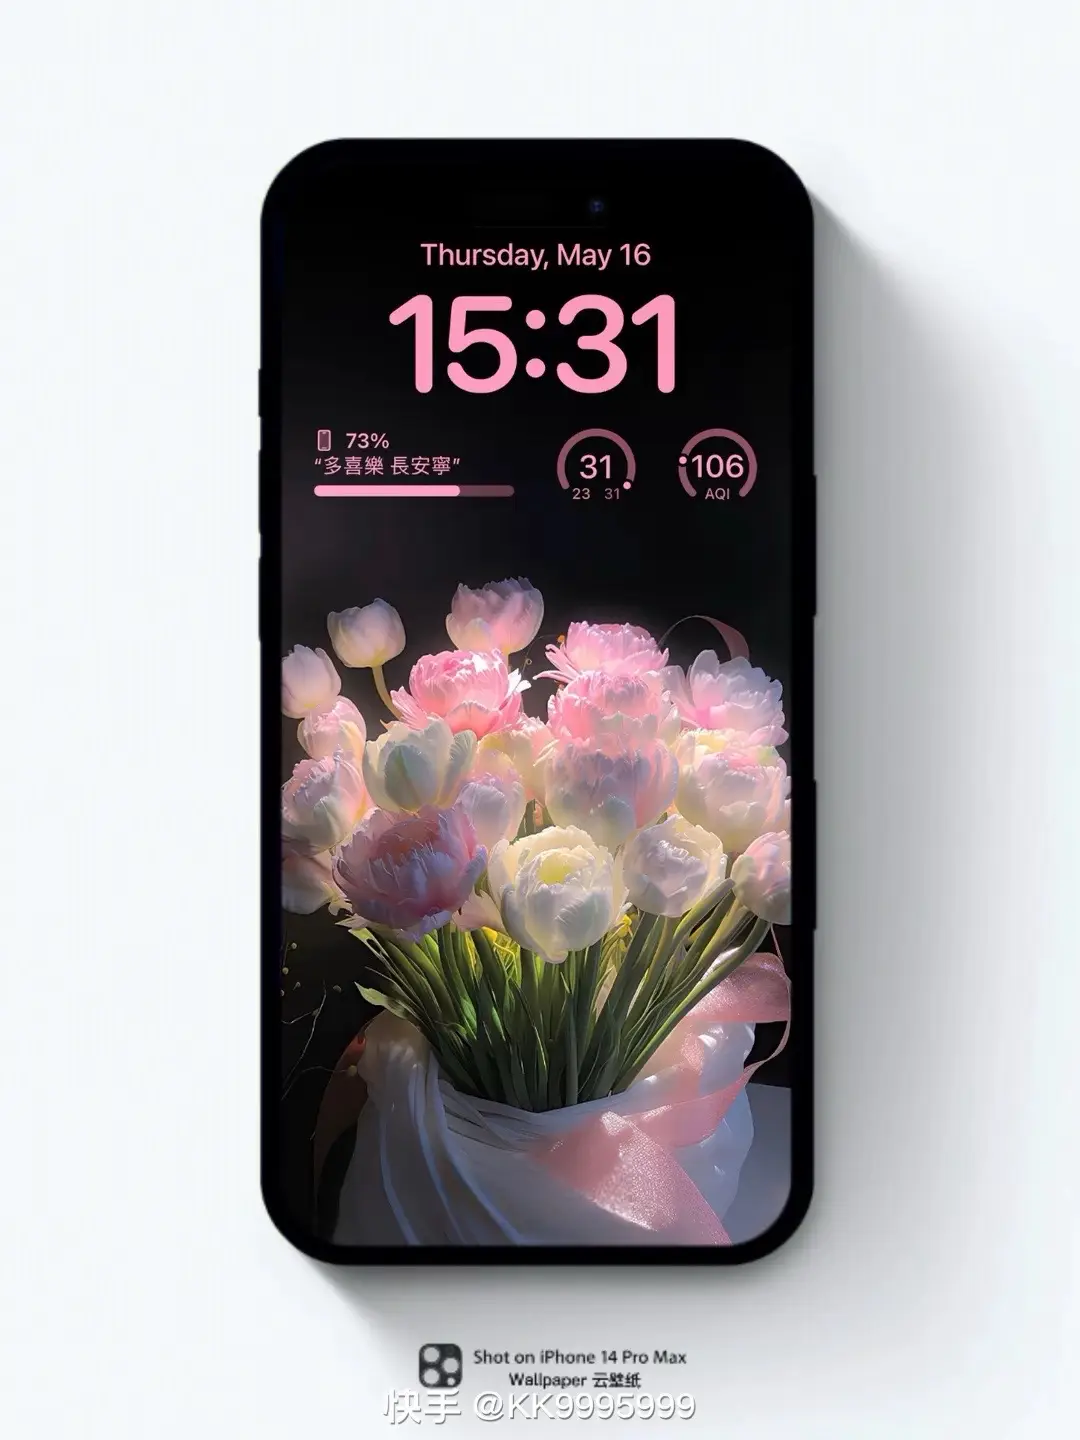 #photowallpaper #fyp #iphone #wallpaper #fyp #ille_jo #foryoupage #butterfly #purple #flowers 